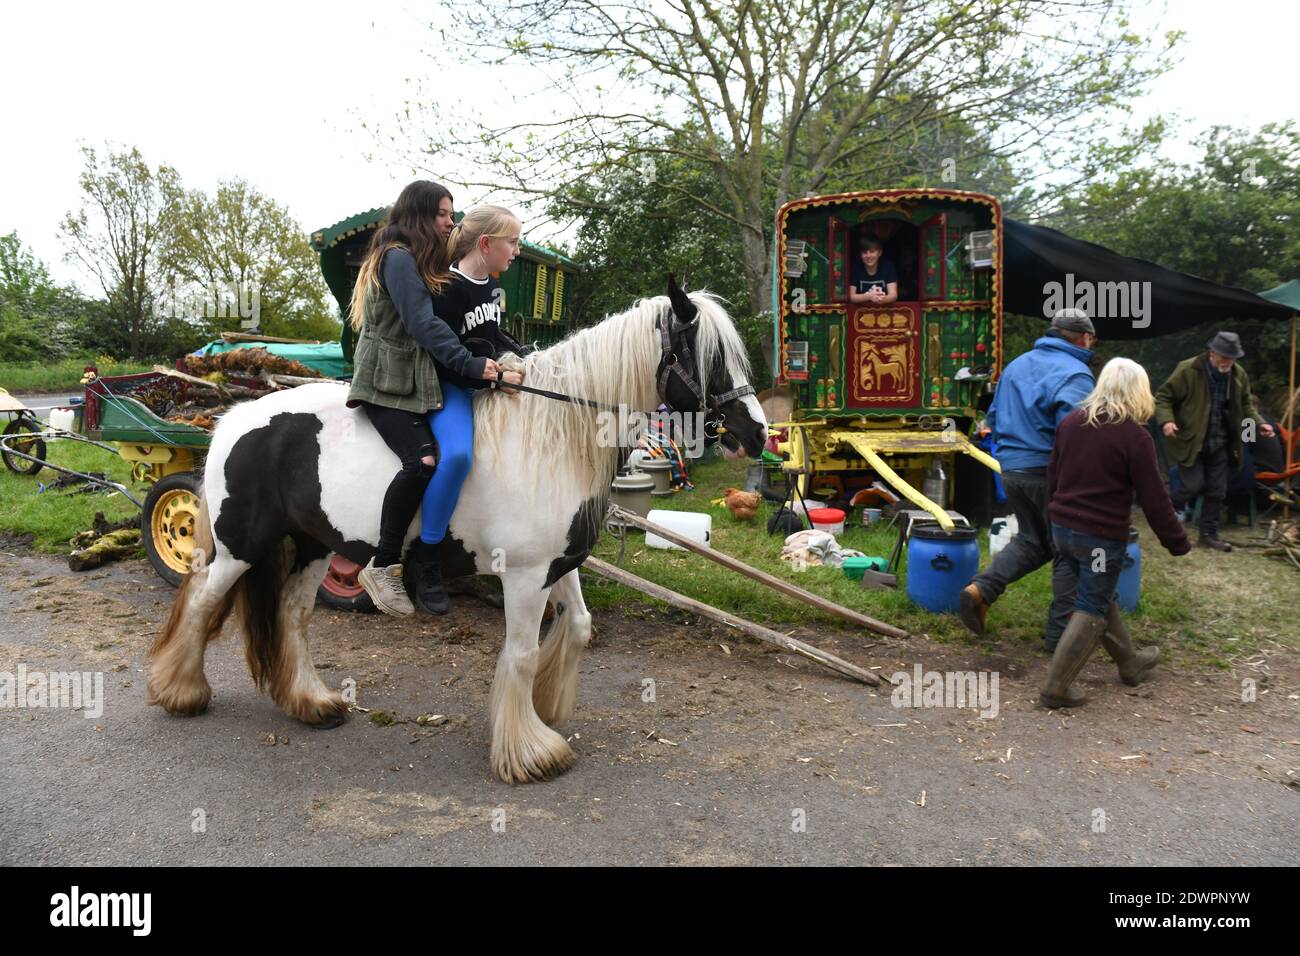 Jeune fille à cheval en rafle Angleterre UK Romany voyageurs près de Hinstock dans Shropshire. Voyageur voyageurs Grande-Bretagne filles camp wagon wagons Banque D'Images